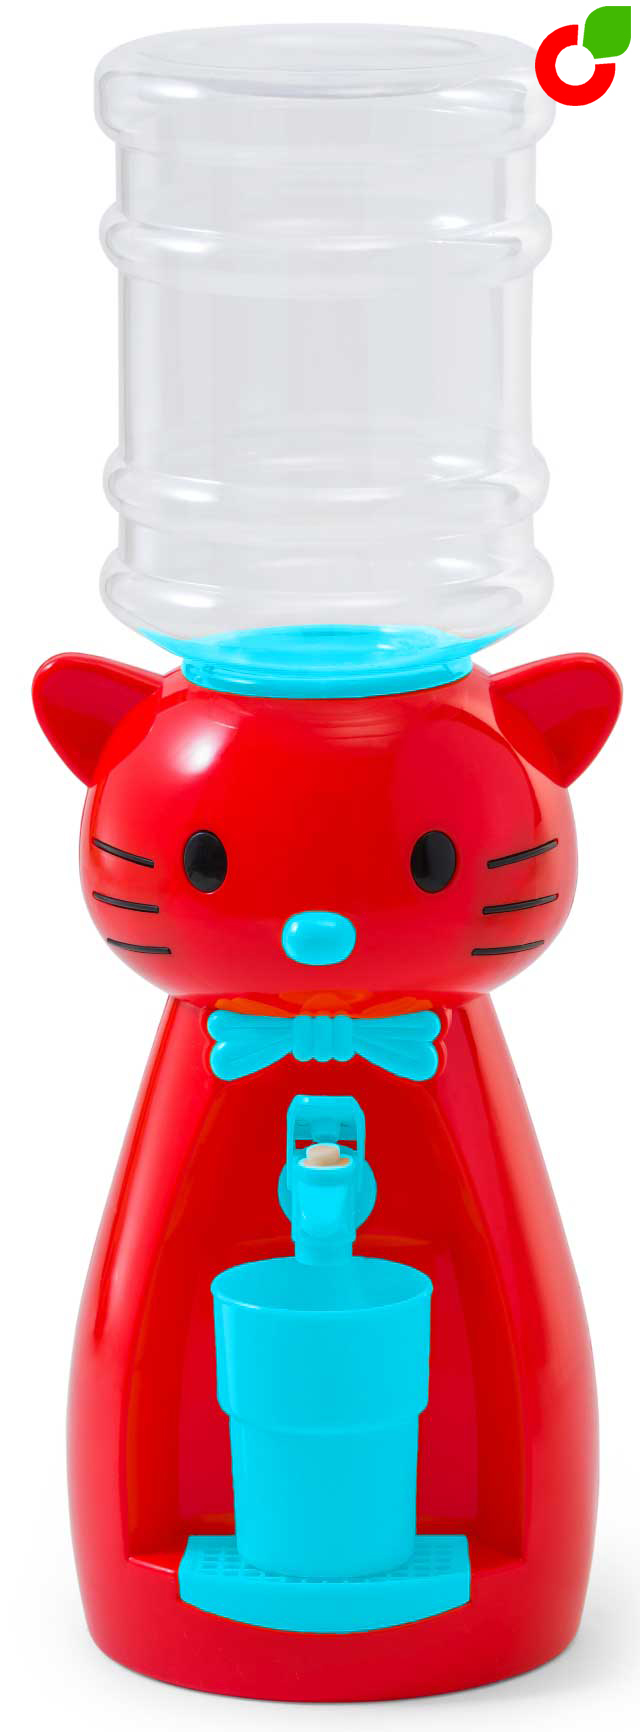  кулер VATTEN kids Kitty Red - цены на кулеры для воды  .